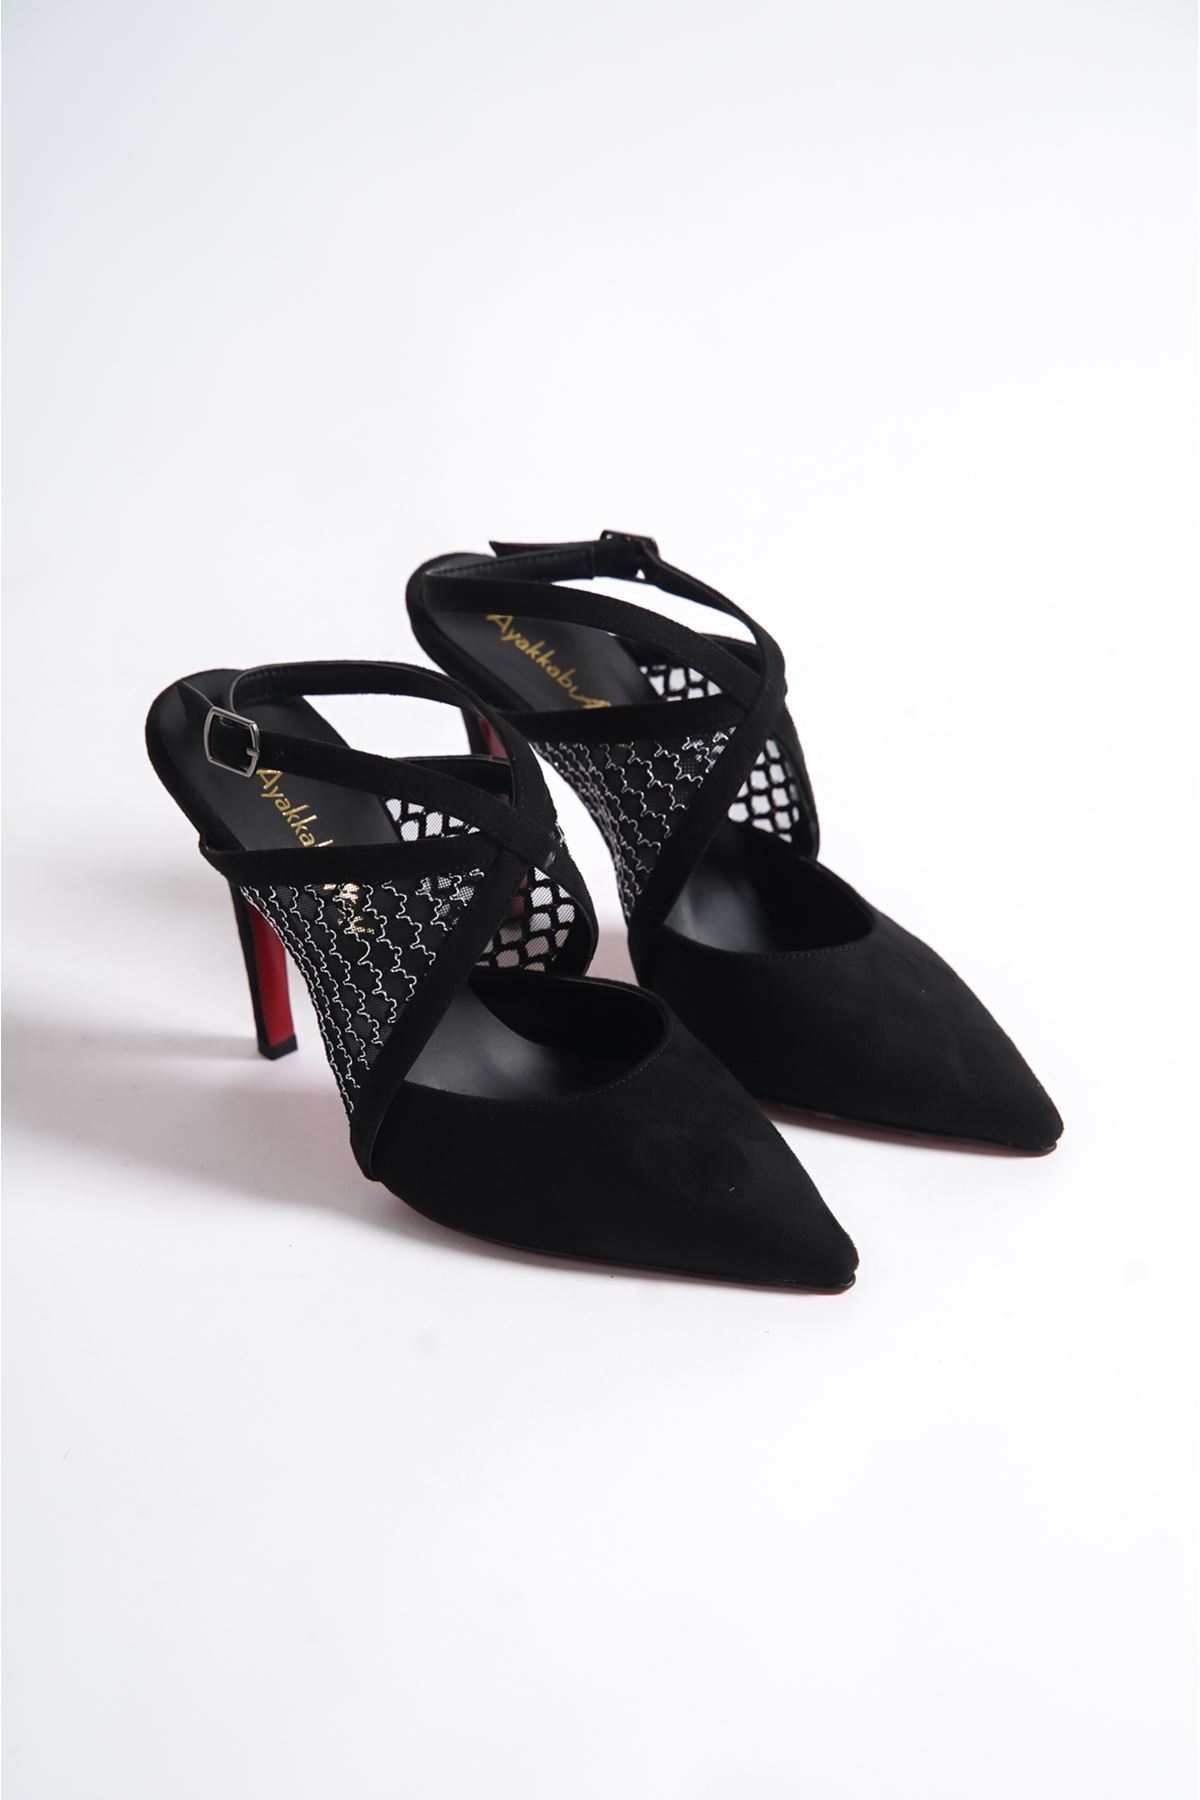 Siyah Süet Siyah File Detaylı  Özel Tasarım Kadın İnce Topuklu Ayakkabı Stiletto Harlow